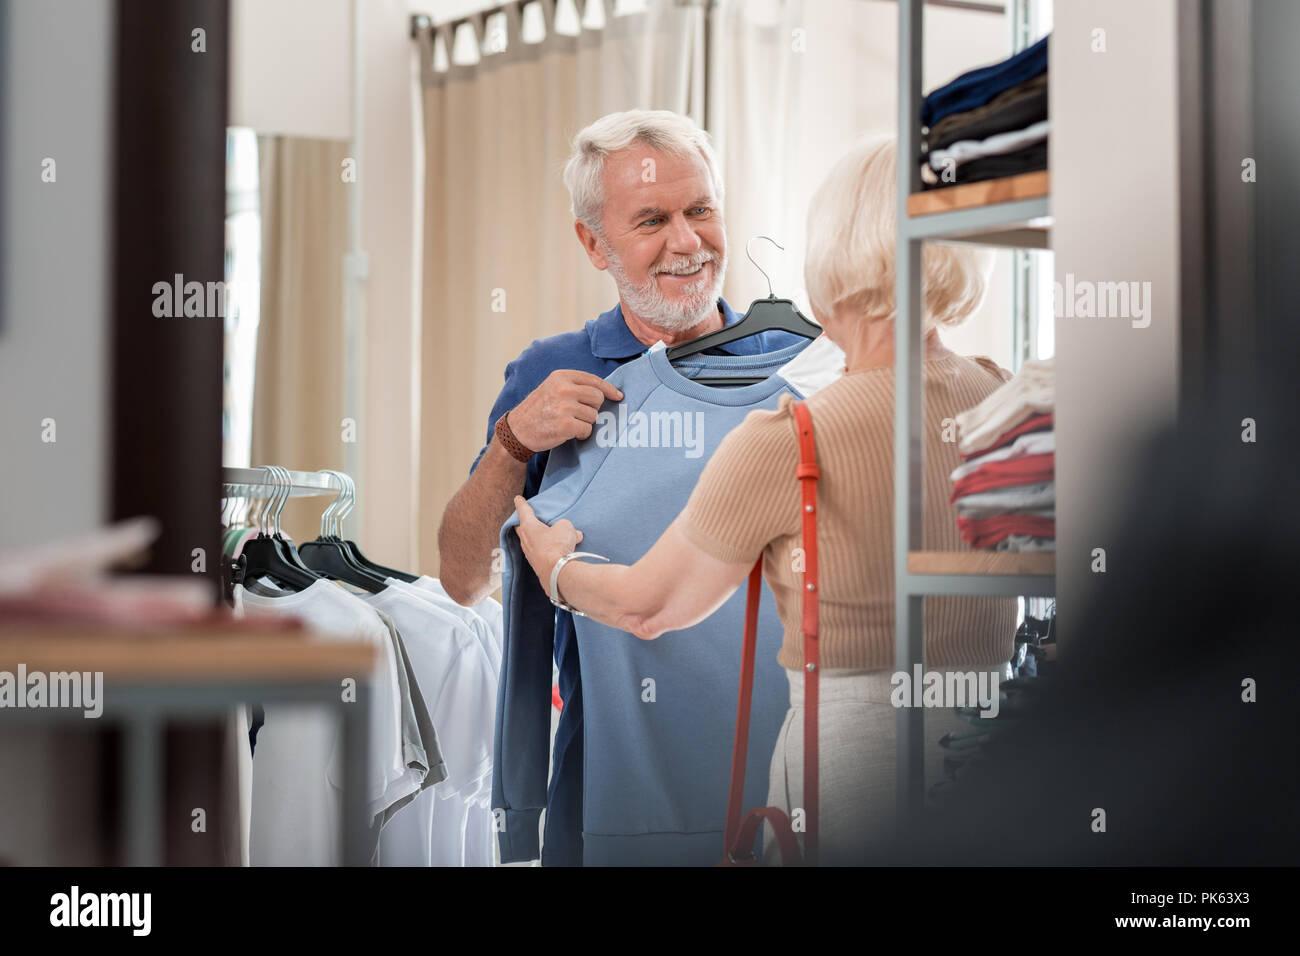 Gioioso uomo anziano mantenendo elegante pullover al suo petto in negozio per lo shopping Foto Stock